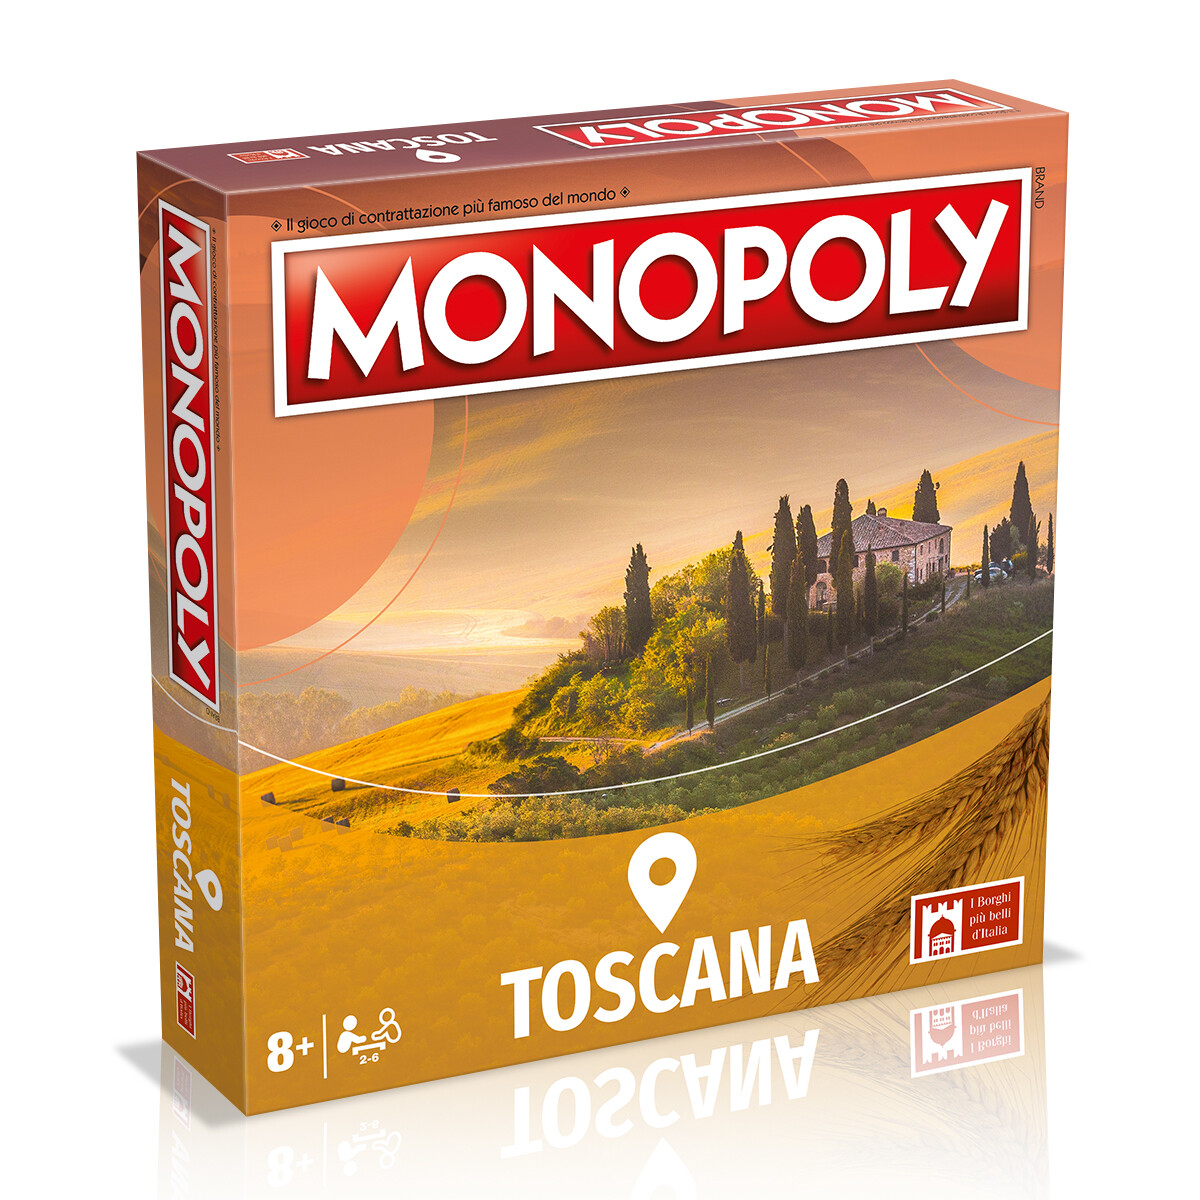 Monopoly Abruzzo & Molise - Edizione I Borghi Più Belli d'Italia - Monopoly